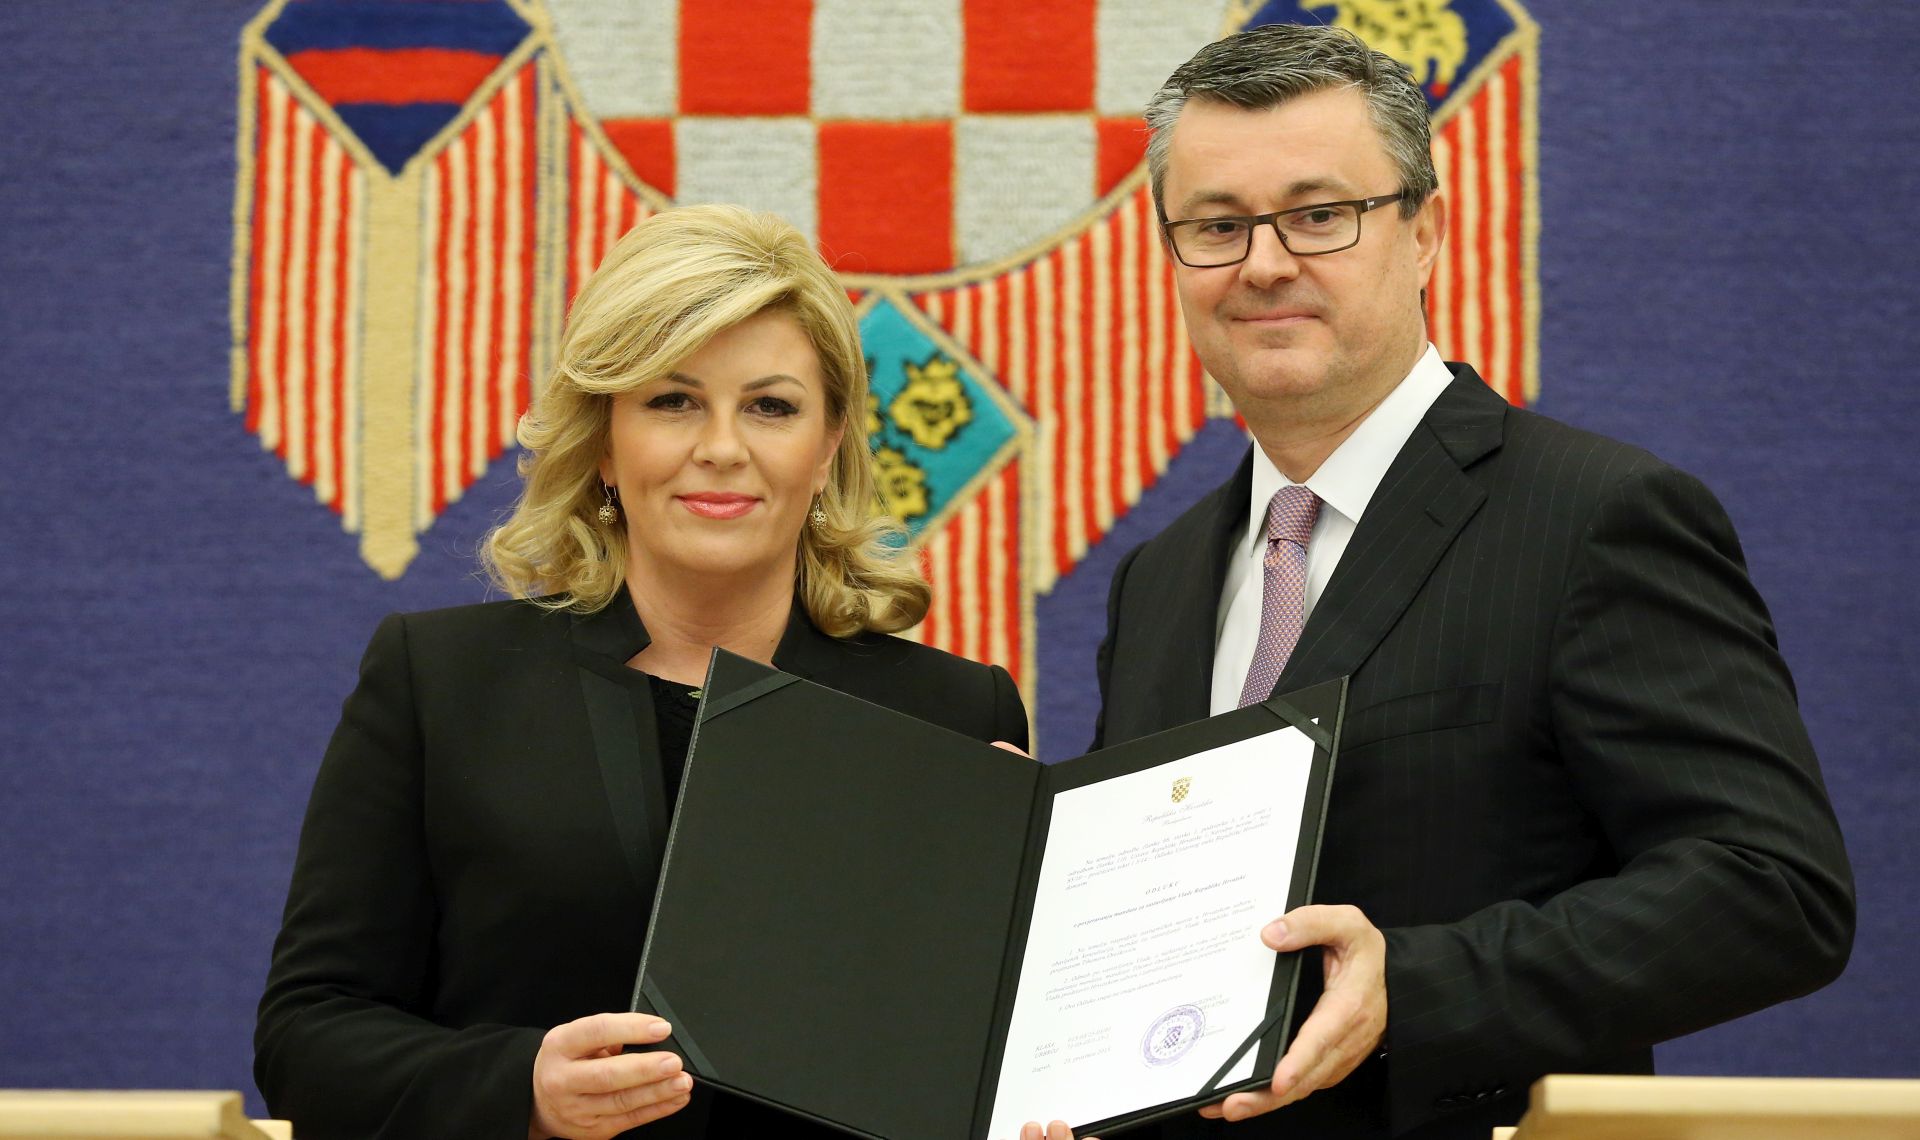 Predsjednica povjerila mandat	 Tihomiru Oreškoviću